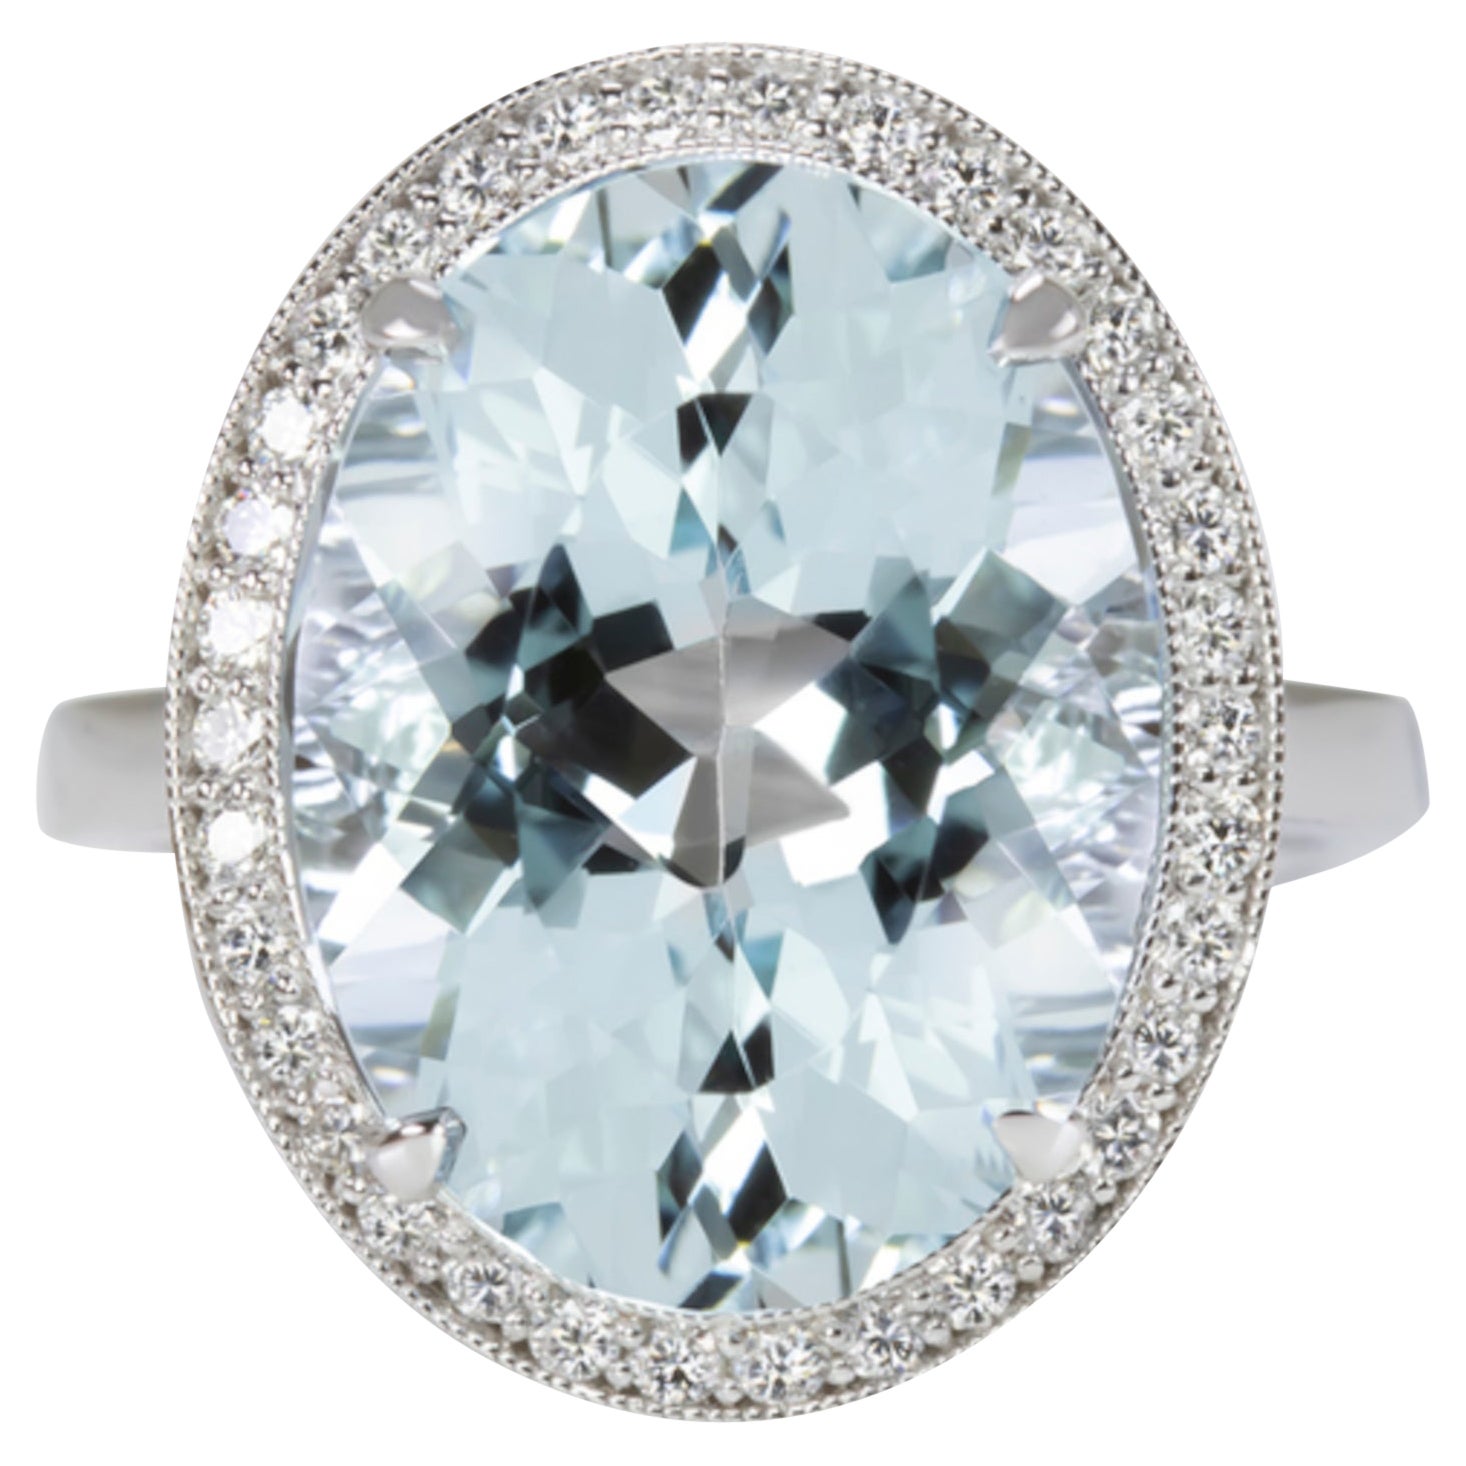 Fantastic 8 Carat Oval Acquamarine Diamond Solitaire Ring